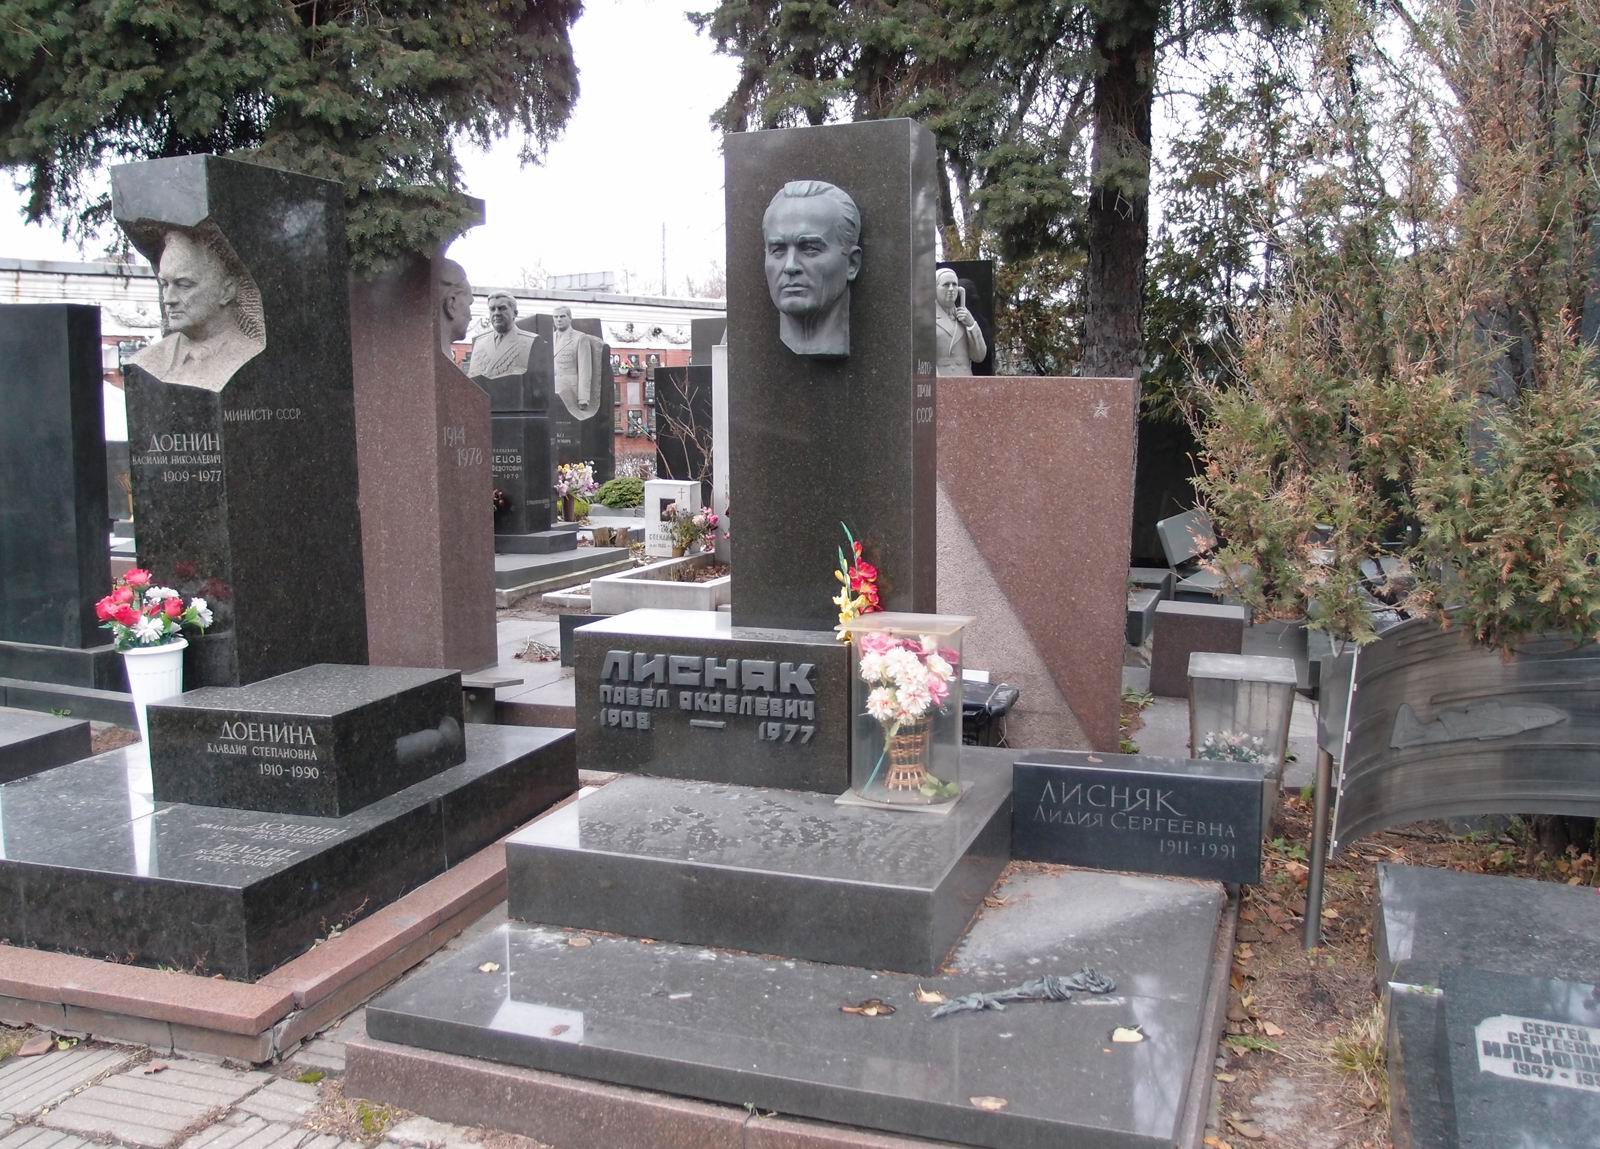 Памятник на могиле Лисняка П.Я. (1908-1977), ск. Н.Саркисов, арх. Ф.Казютин, на Новодевичьем кладбище (7-13-11). Нажмите левую кнопку мыши чтобы увидеть фрагмент памятника.